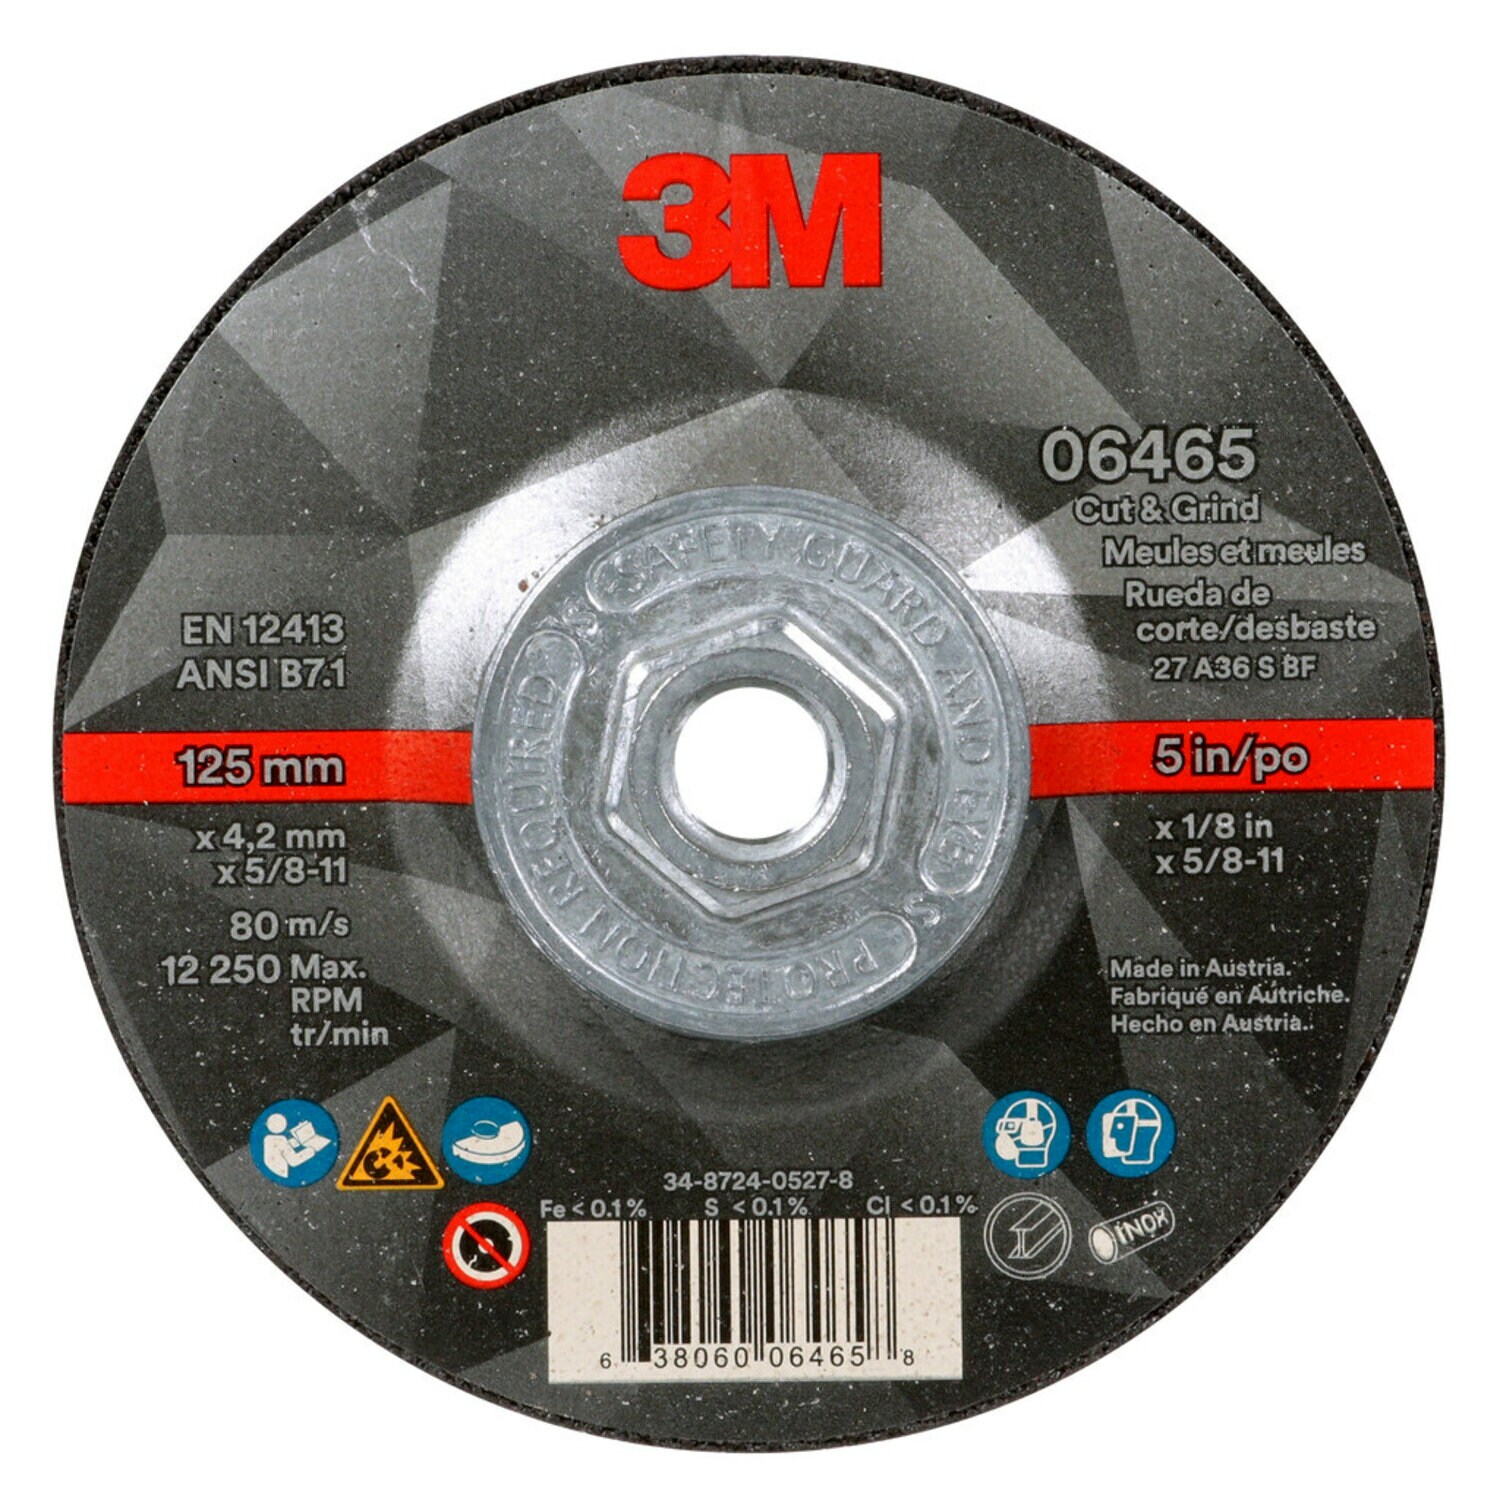 7100245015 - 3M Cut & Grind Wheel, 06465, T27, 5 in x 1/8 in x 5/8 in-11, Quick
Change, 10/Carton, 20 ea/Case